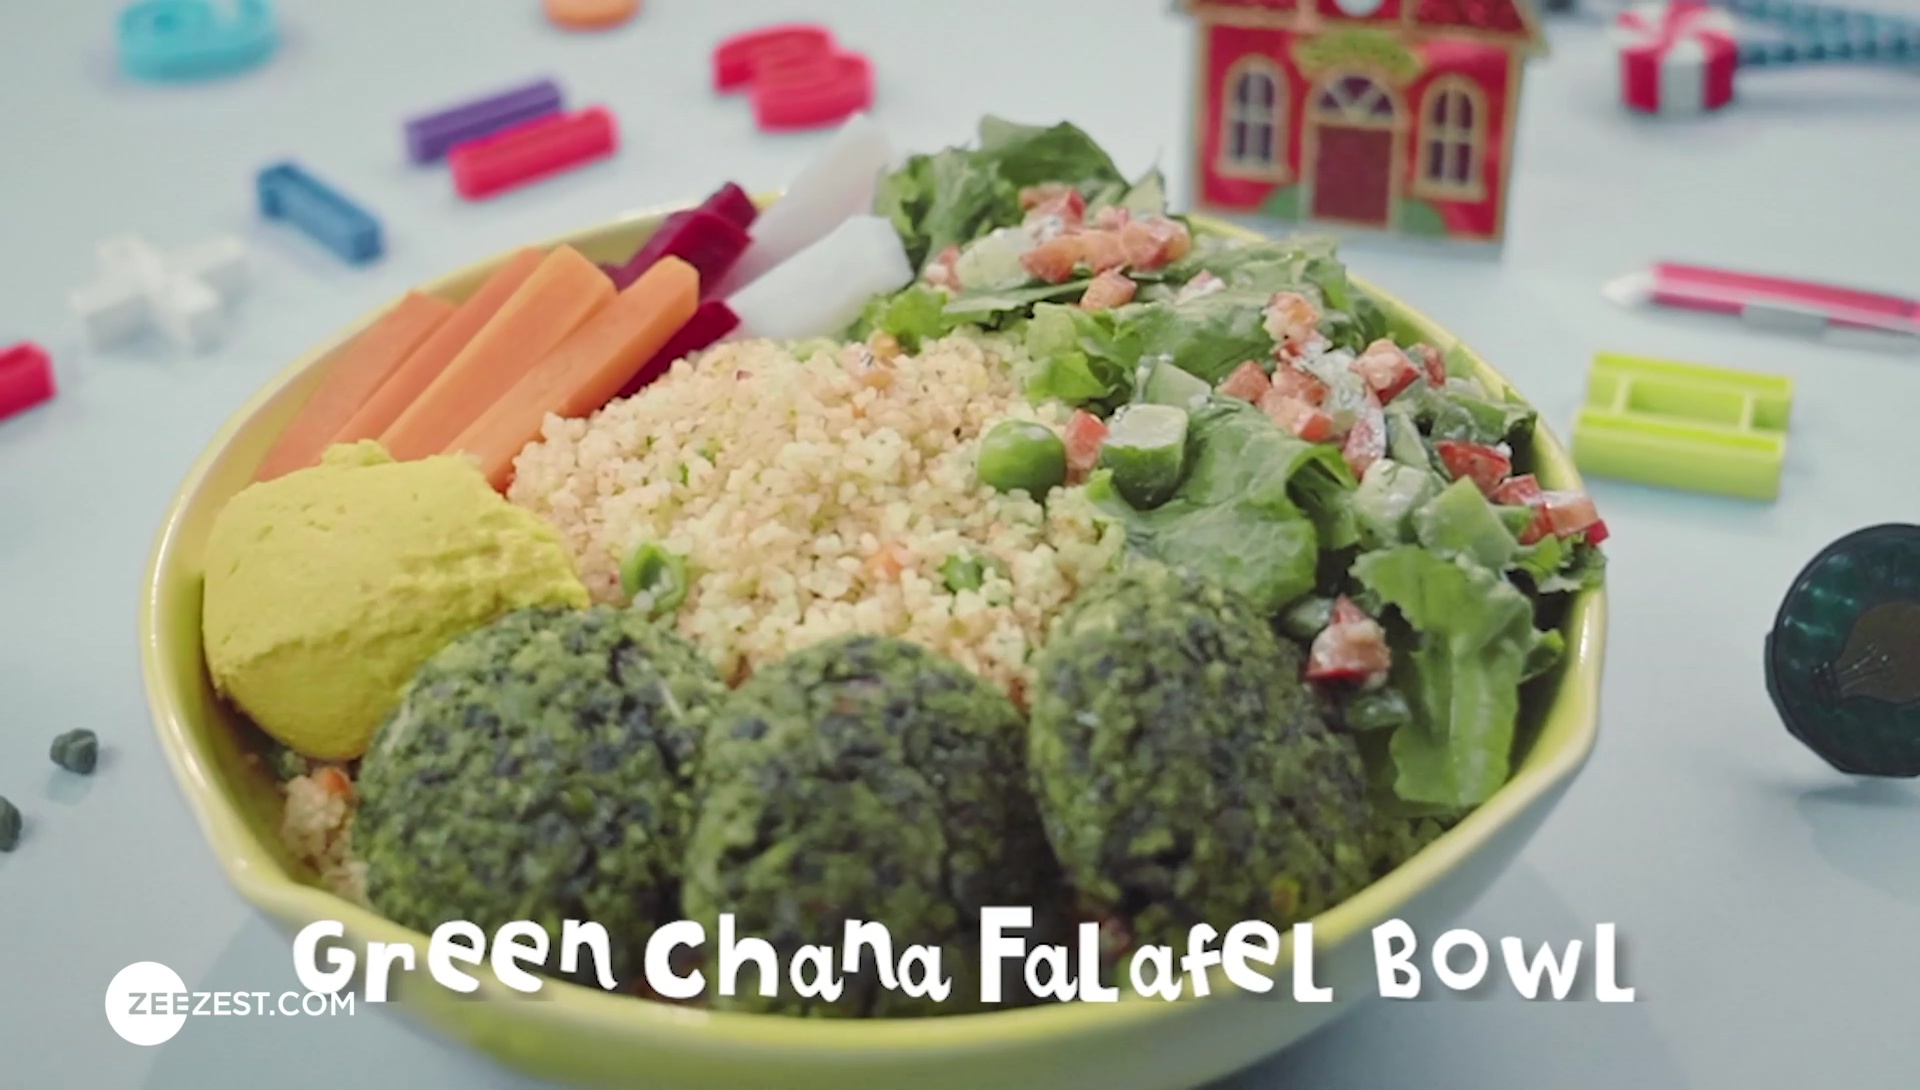 Green Chana Falafel Bowl